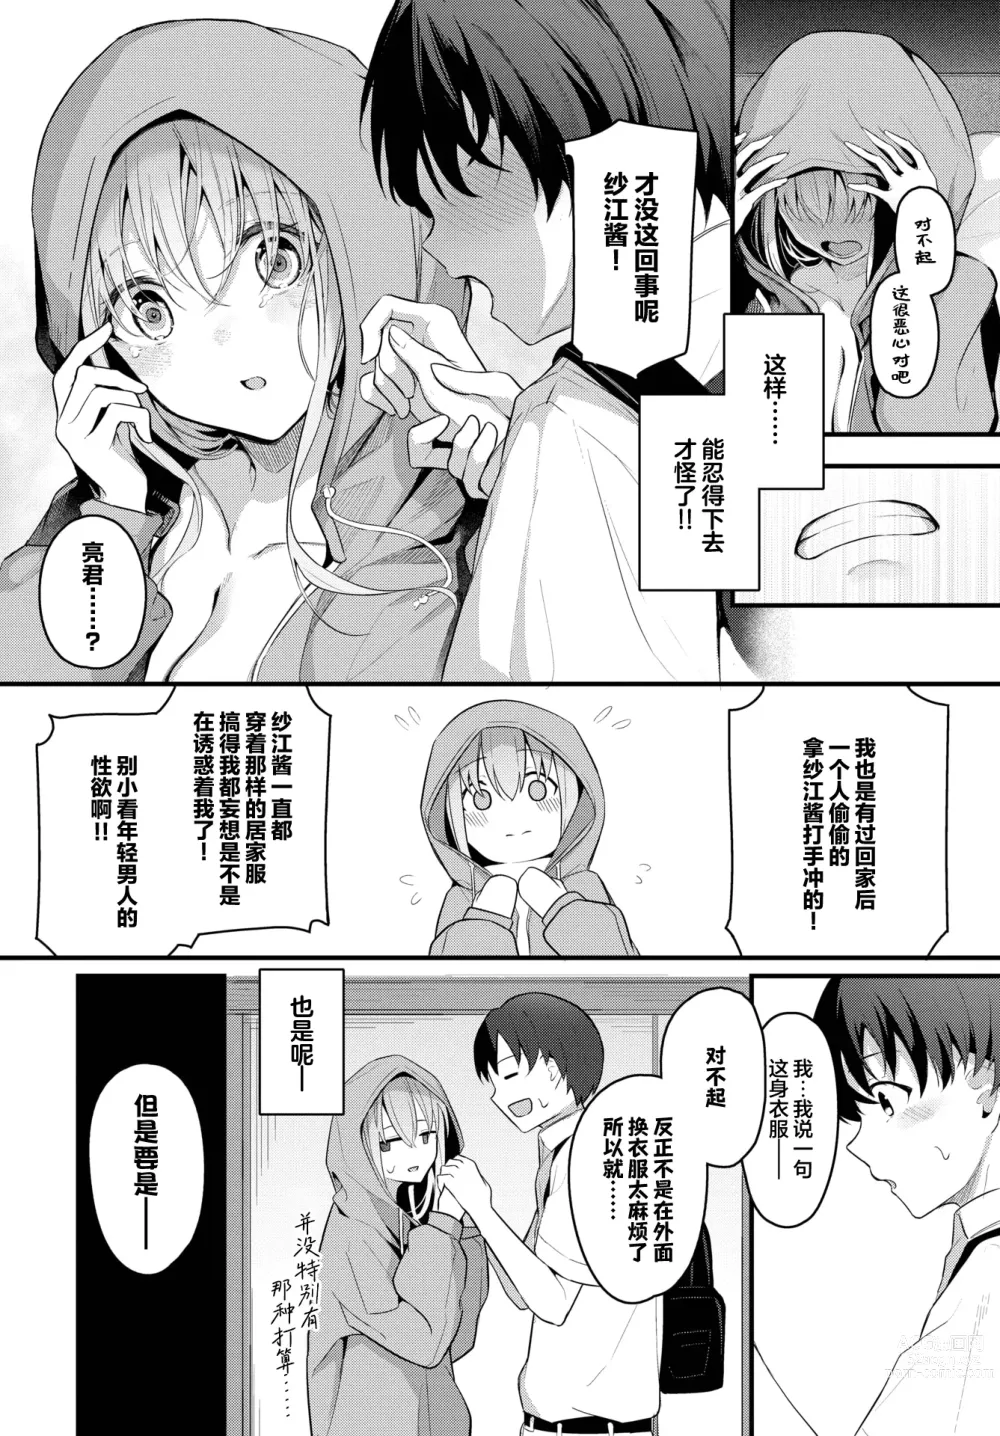 Page 7 of manga Hikikomori Kanojo